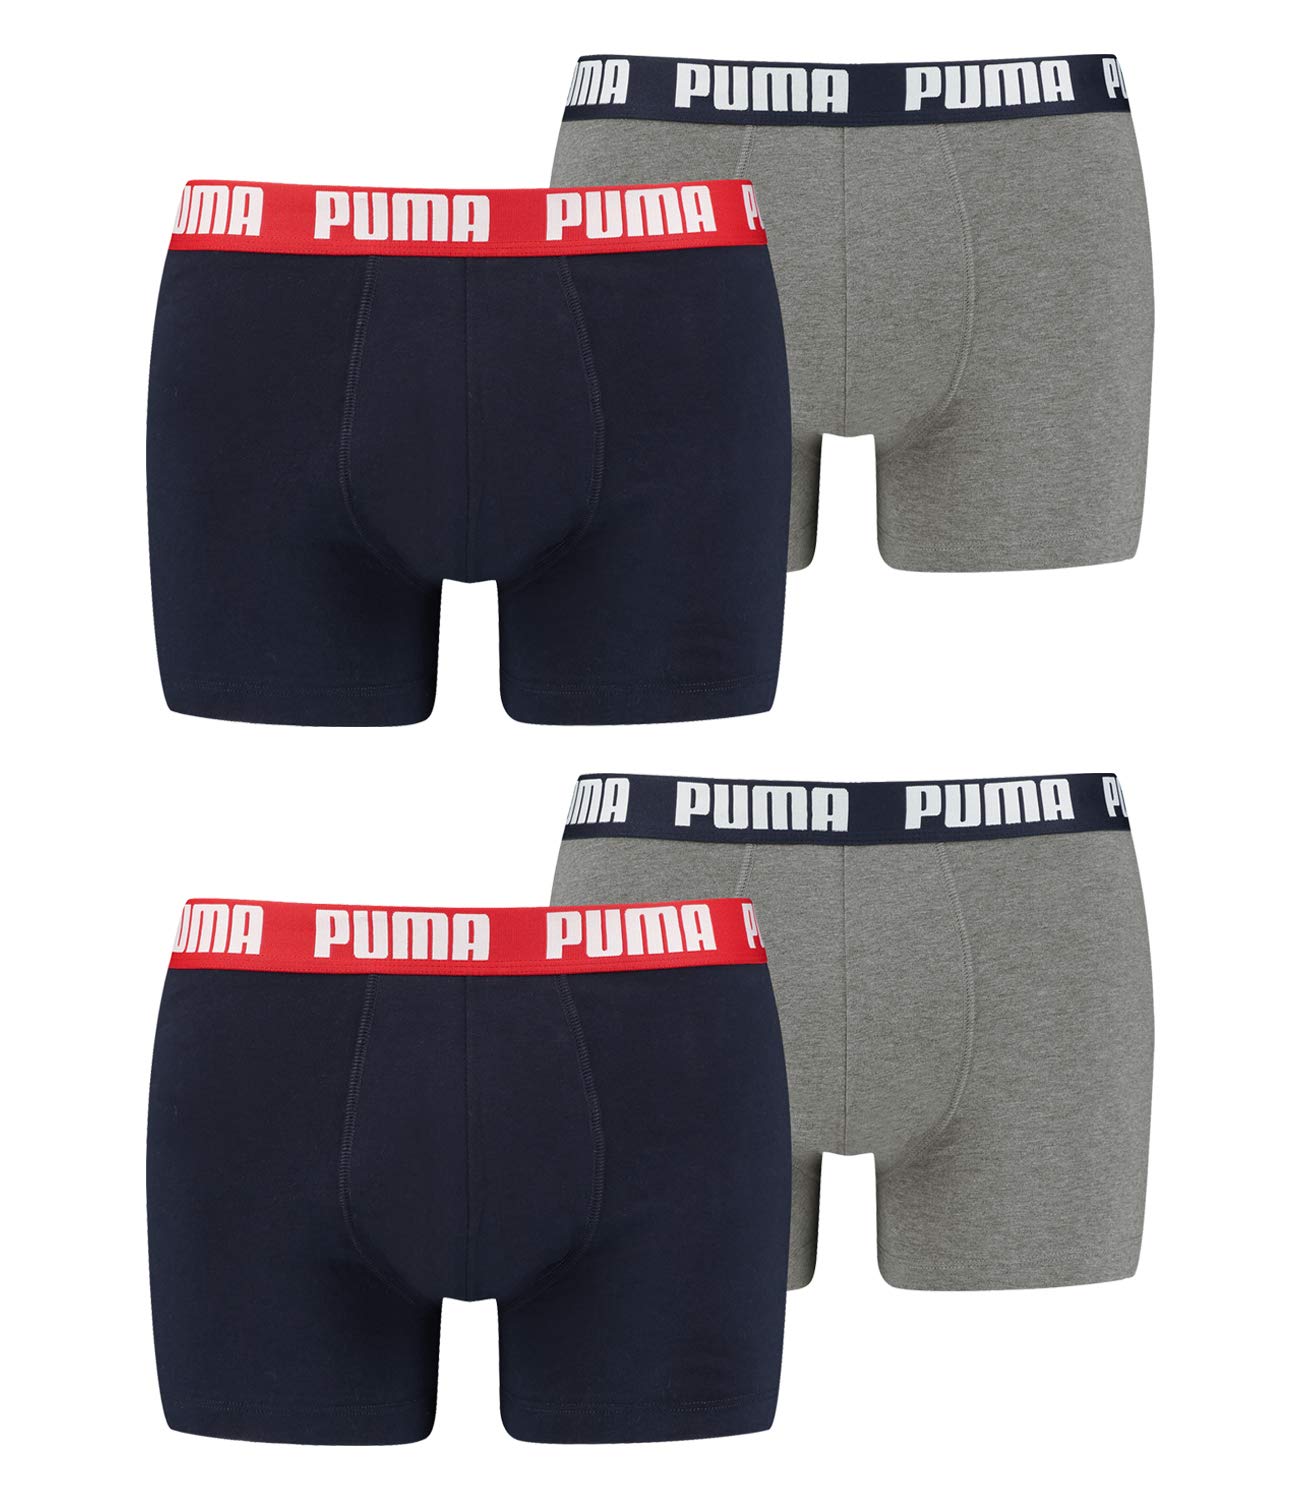 PUMA 4 er Pack Boxer Boxershorts Men Herren Unterhose Pant Unterwäsche, Farbe:036 - Blue/Grey Melange, Bekleidungsgröße:XL